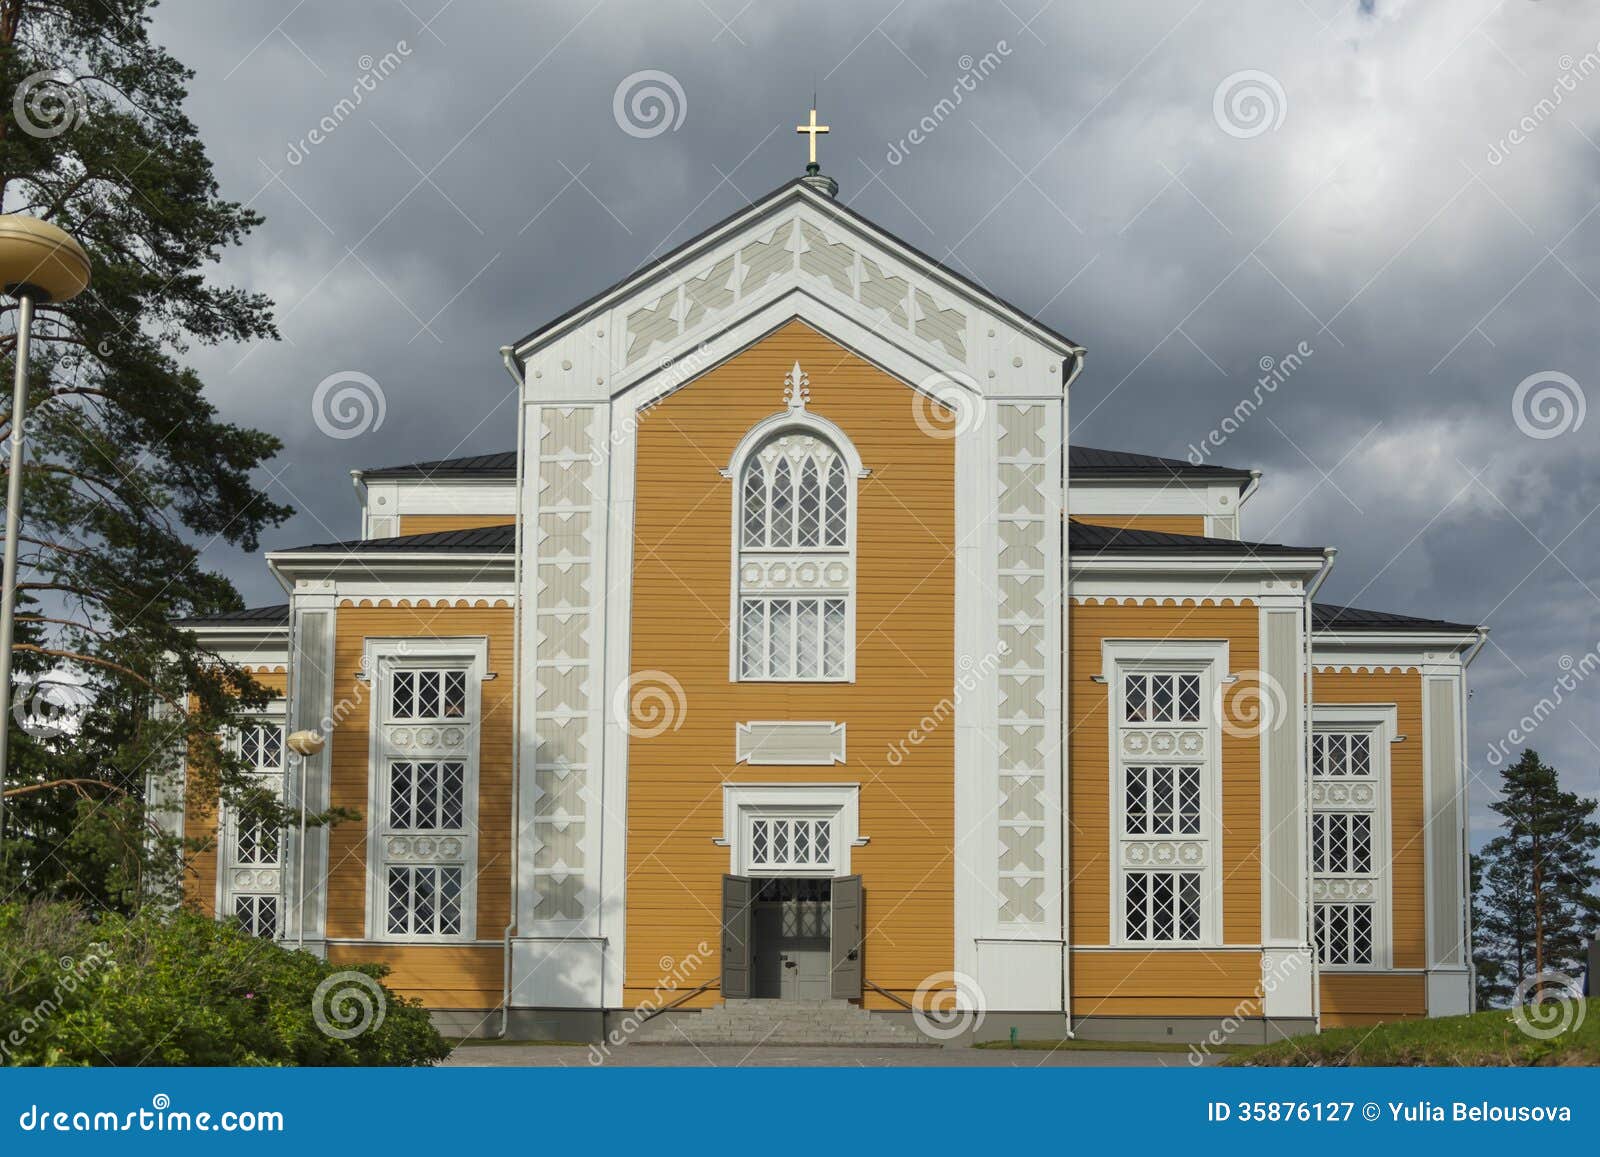 Kerimakikerk - de grootste houten kerk in noordelijk Europa